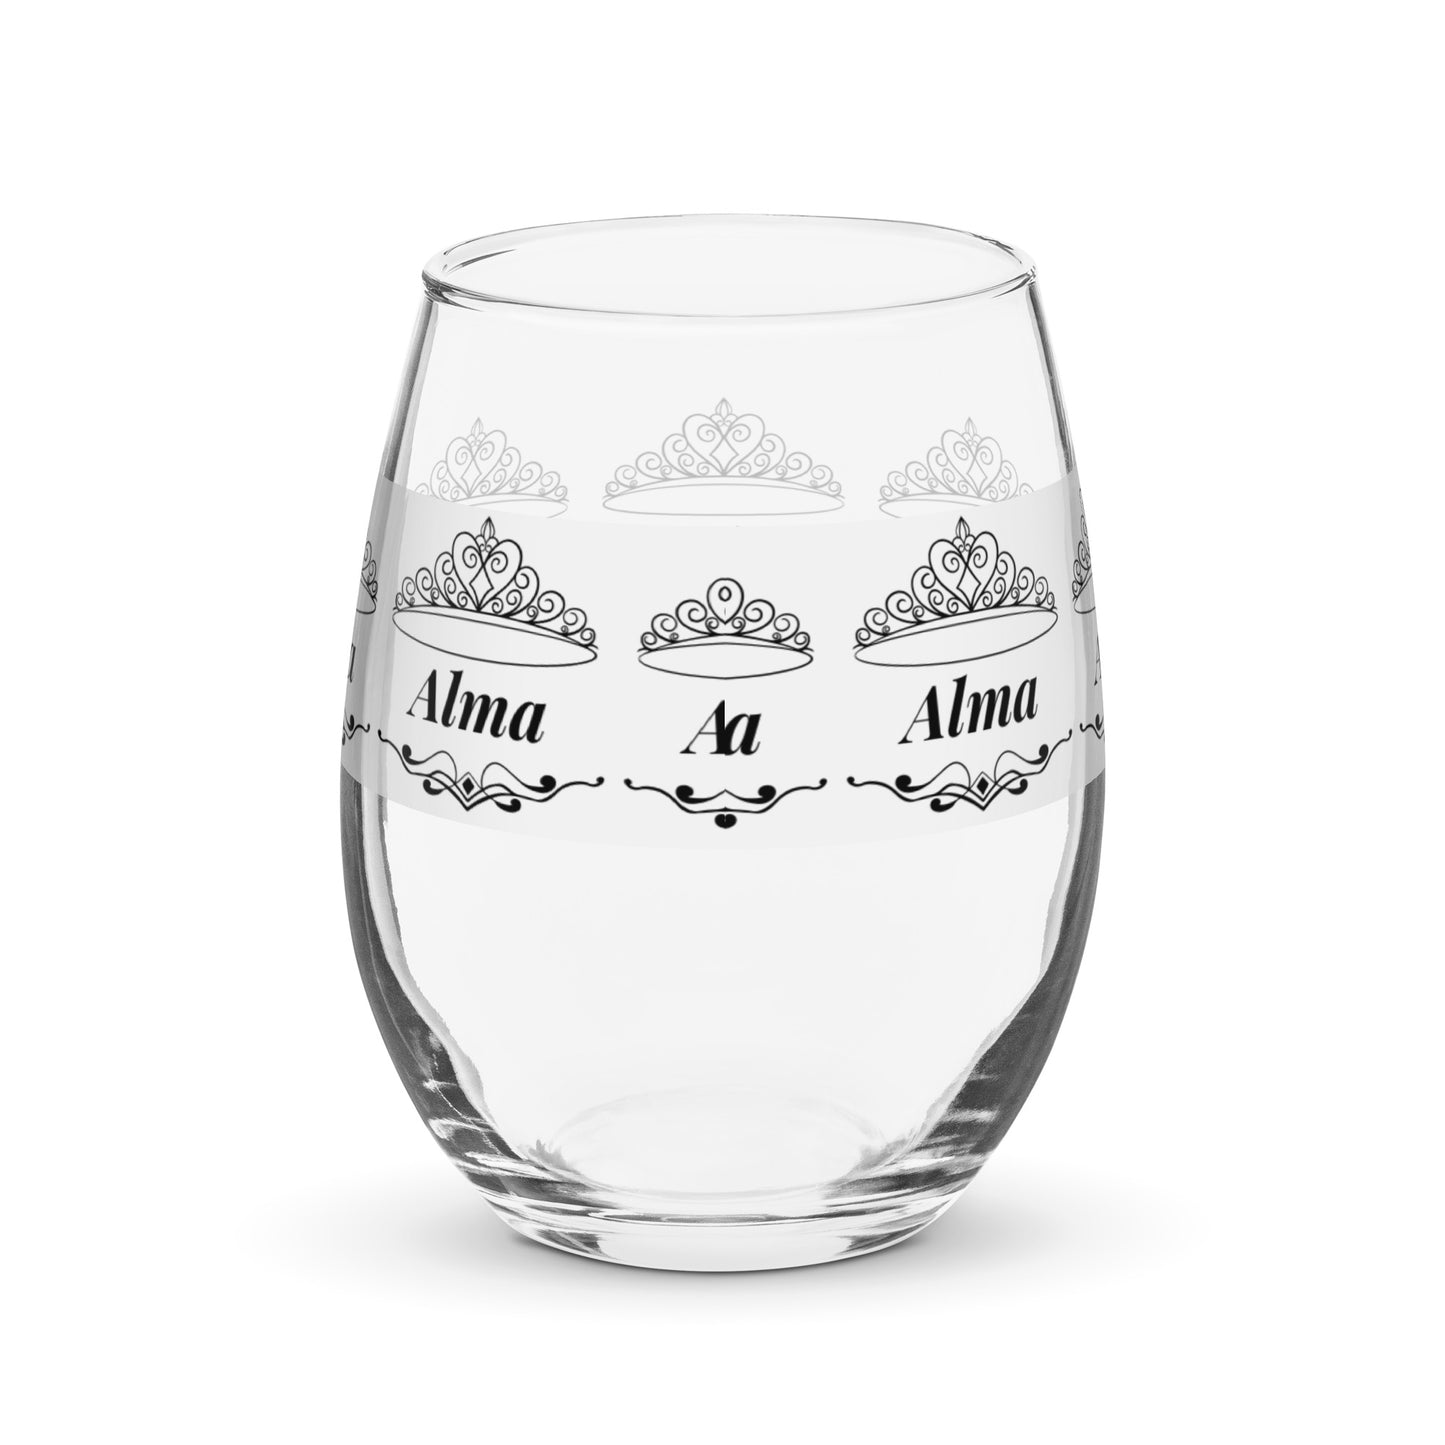 Alma nombre copa de vino copa de vino personalizada copa de vino